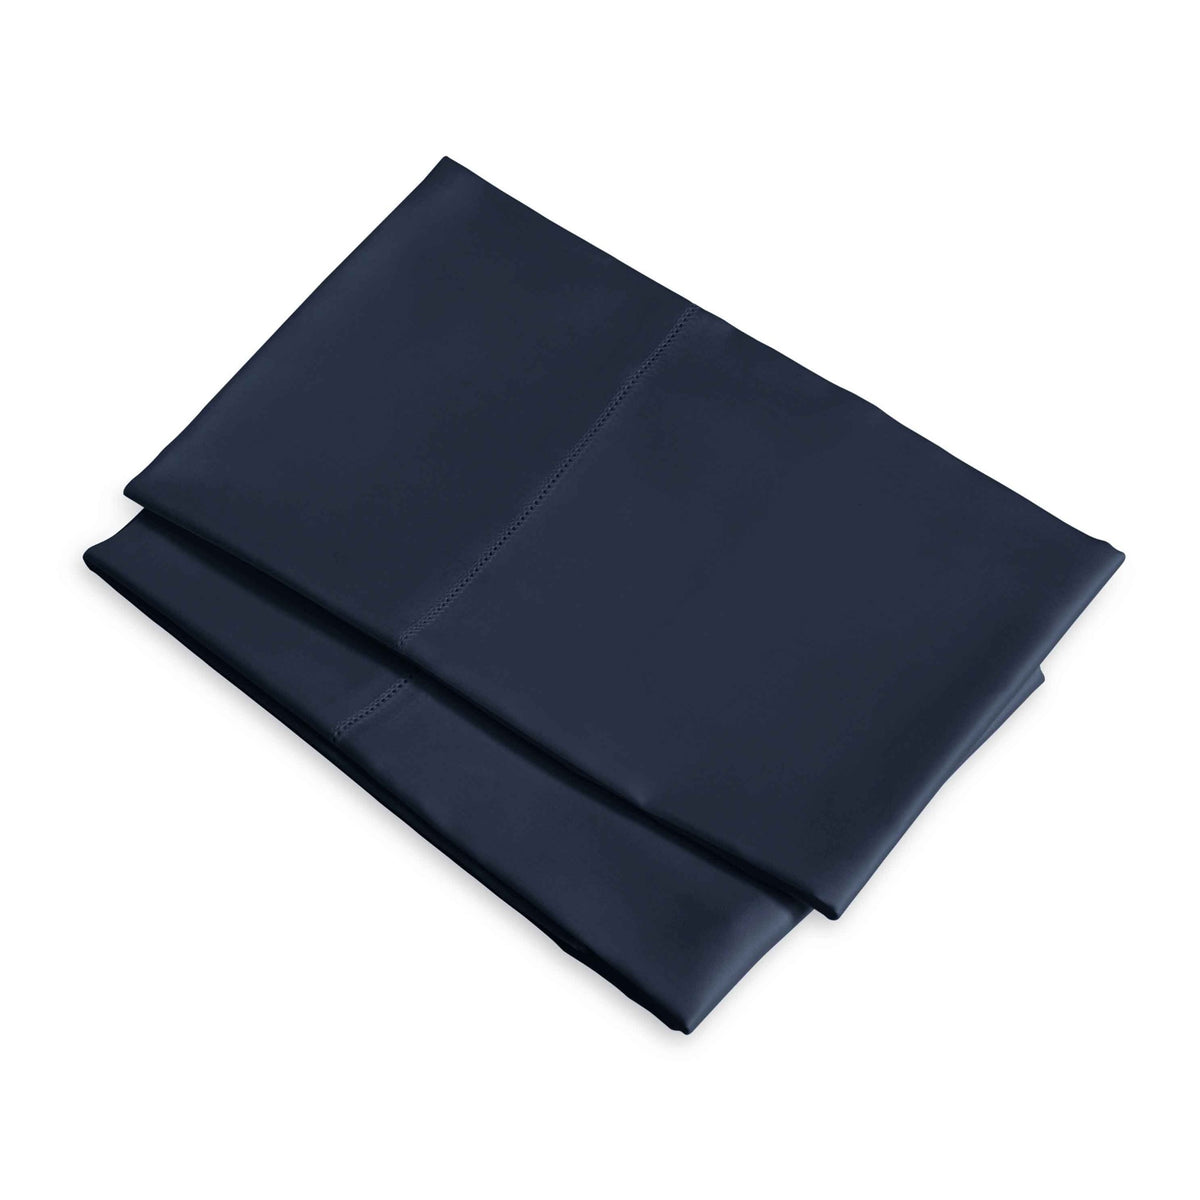 Clear Image of Signoria Raffaello Pillowcases in Dark Blue Color